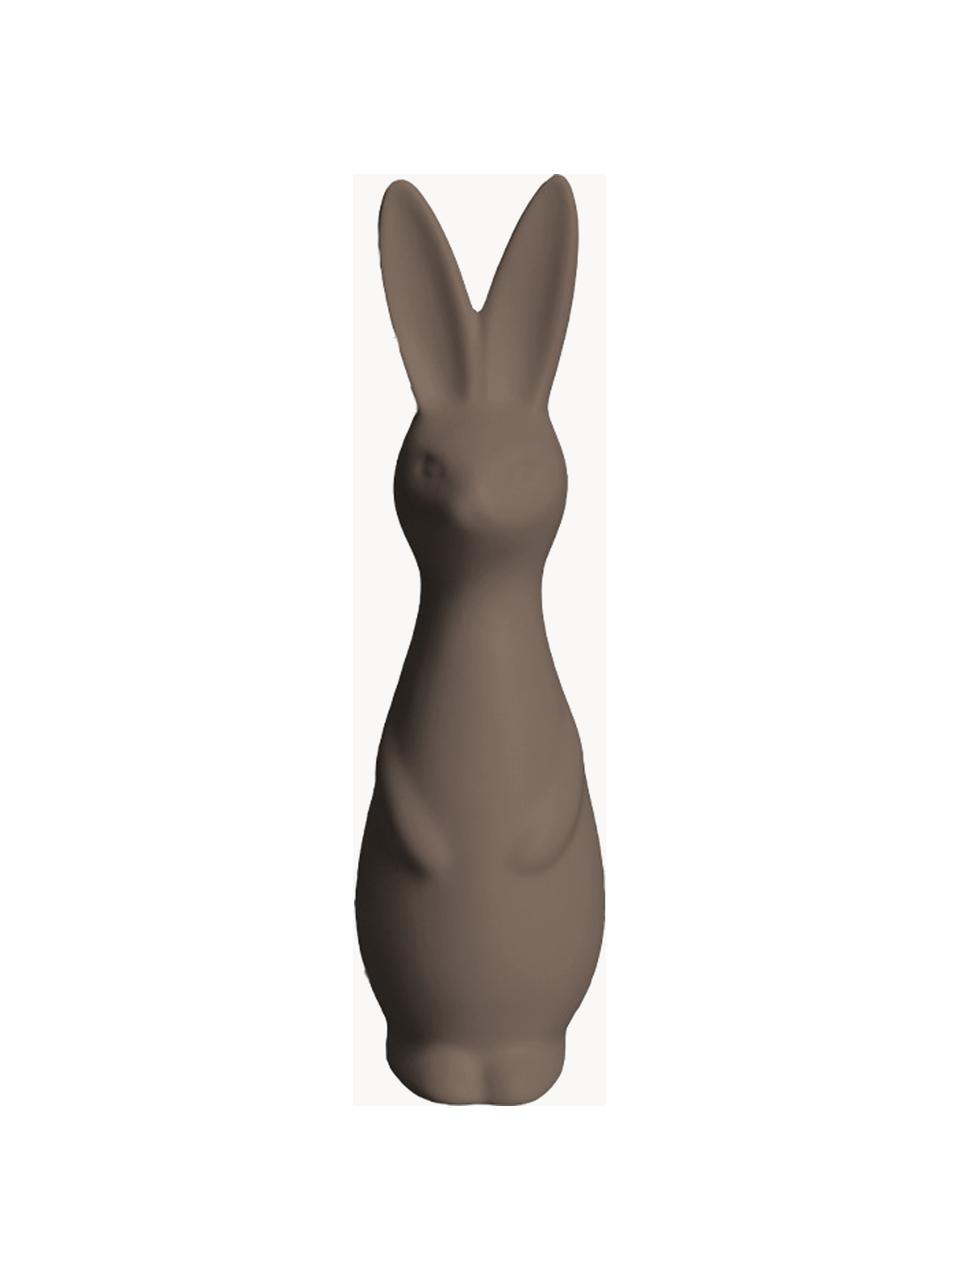 Adorno de Pascua en forma de conejo Swedish, Al 17 cm, Cerámica, Gris pardo mate, Ø 5 x Al 17 cm